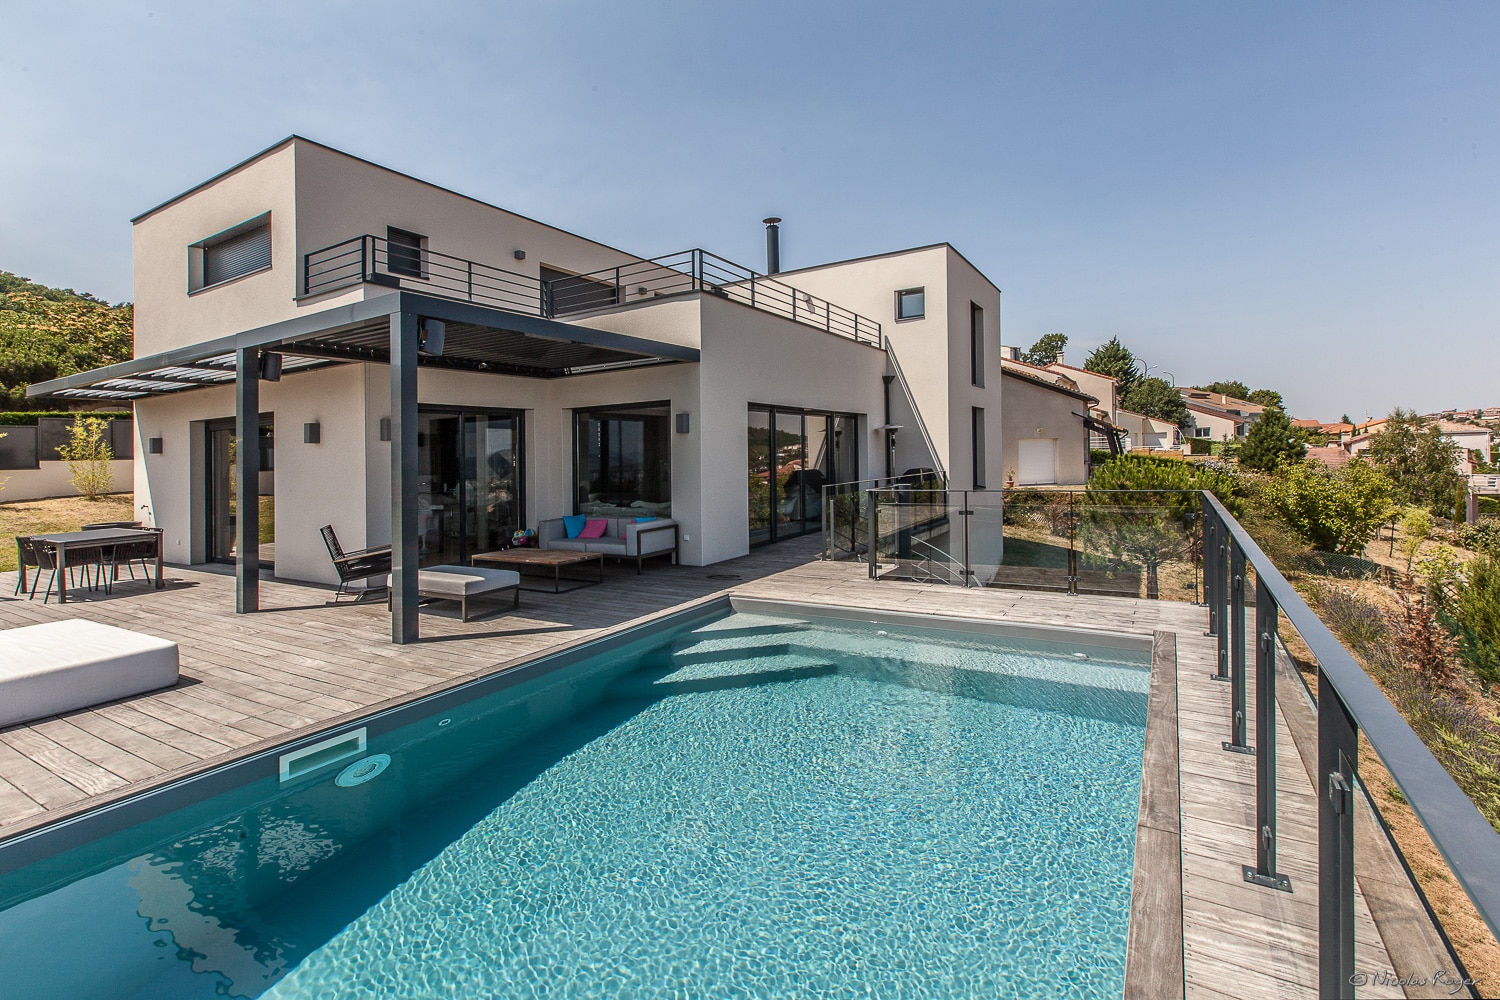 Photographie architecture : Une maison et sa piscine